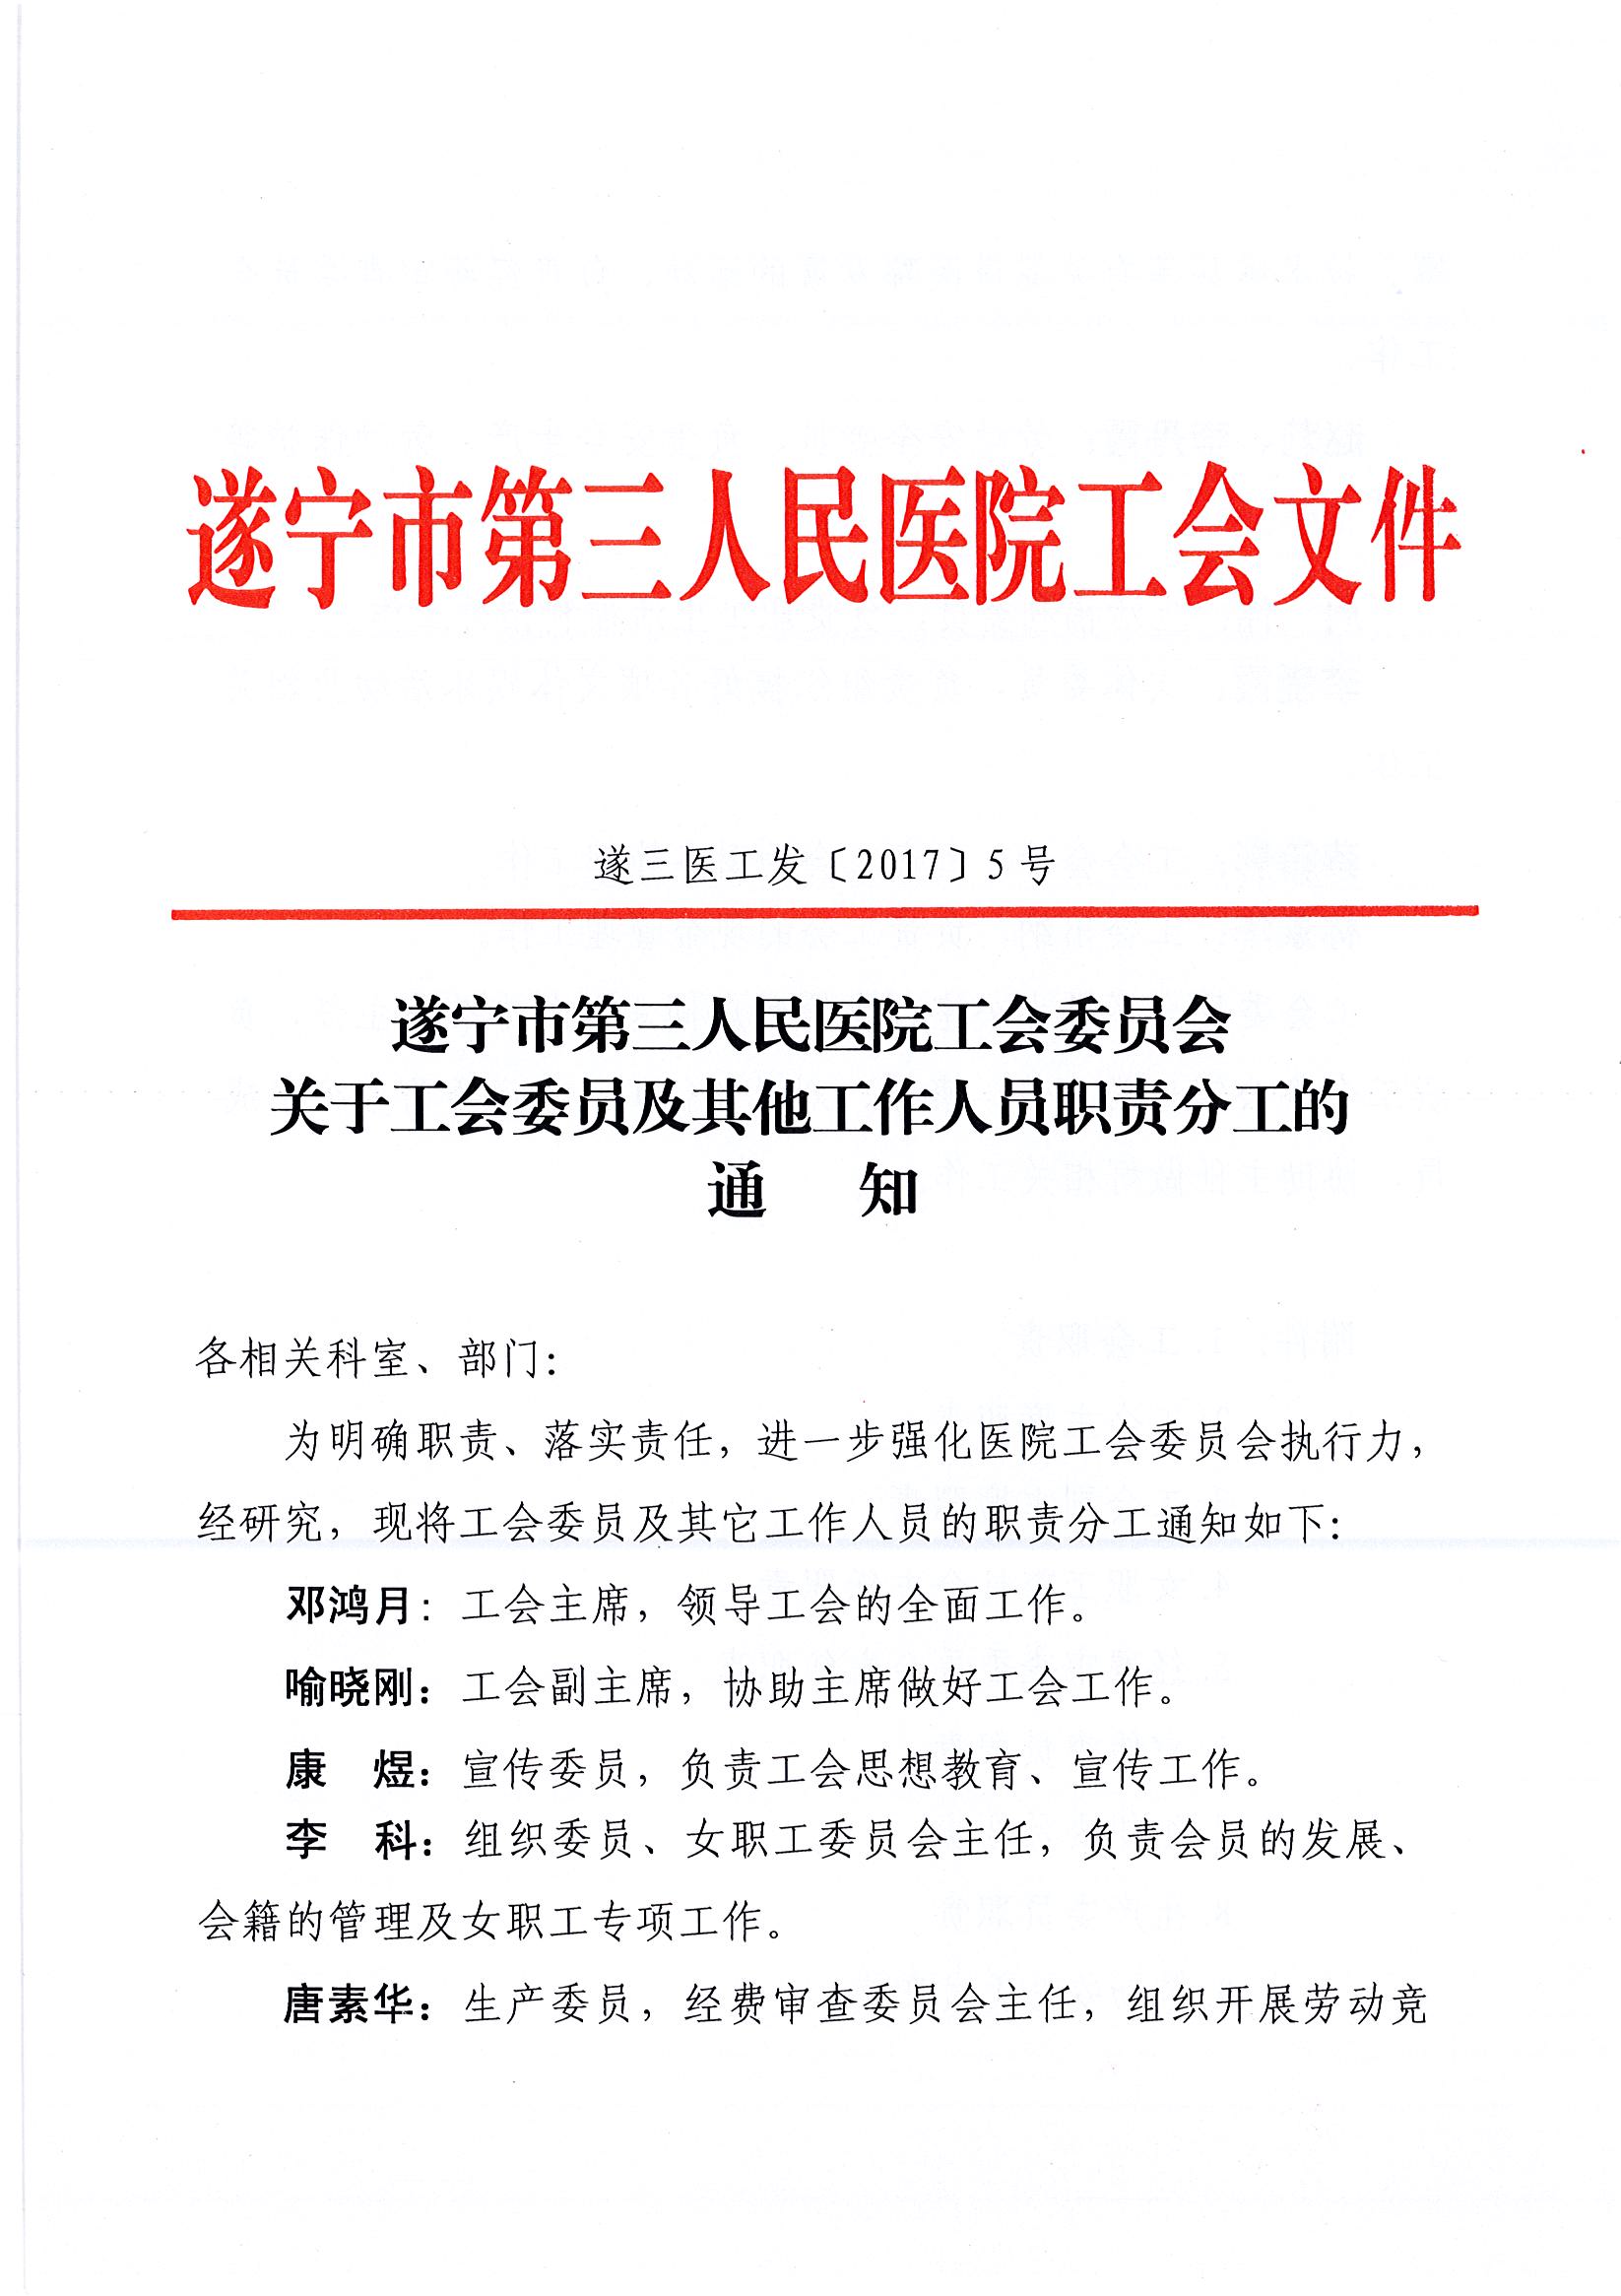 遂宁市第三人民医院工会委员会关于工会委员及其他工作人员职责分工的通知